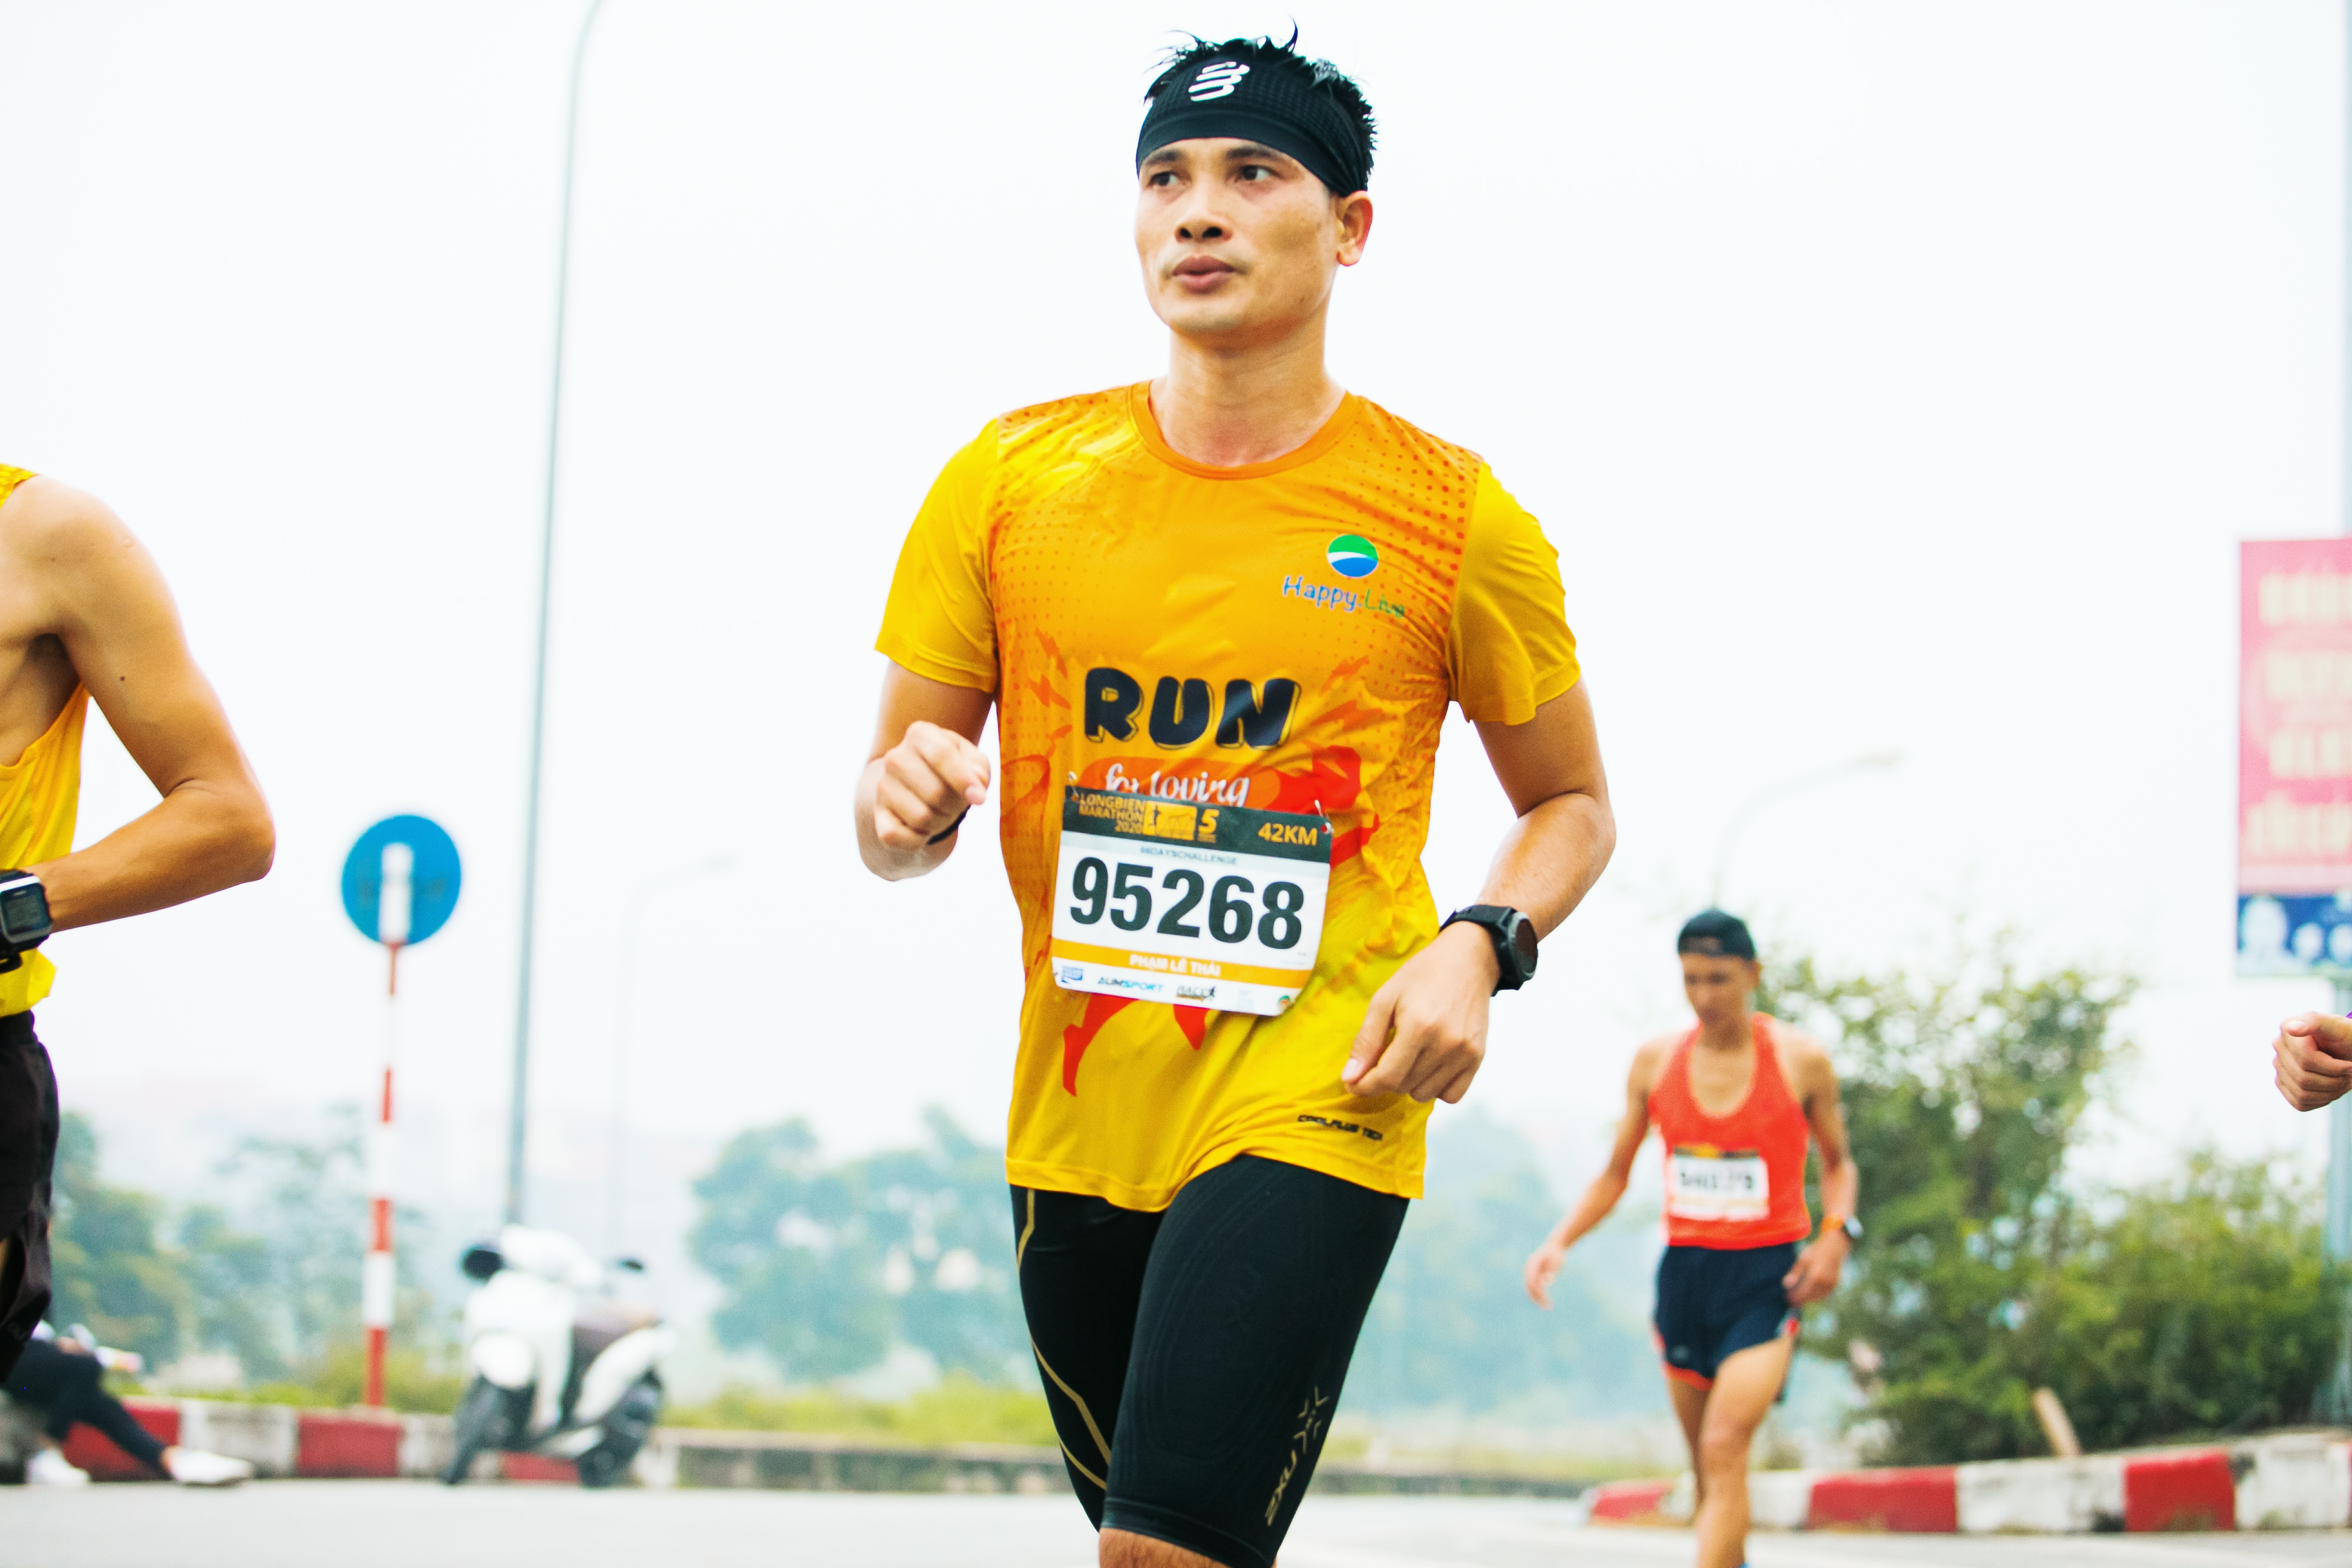 vận động viên chạy cự ly Full Marathon có thành tích dưới 4 giờ tại các giải phong trào của Việt Nam năm 2020 tính cho đến giải LBM ngày 1/11/2020.